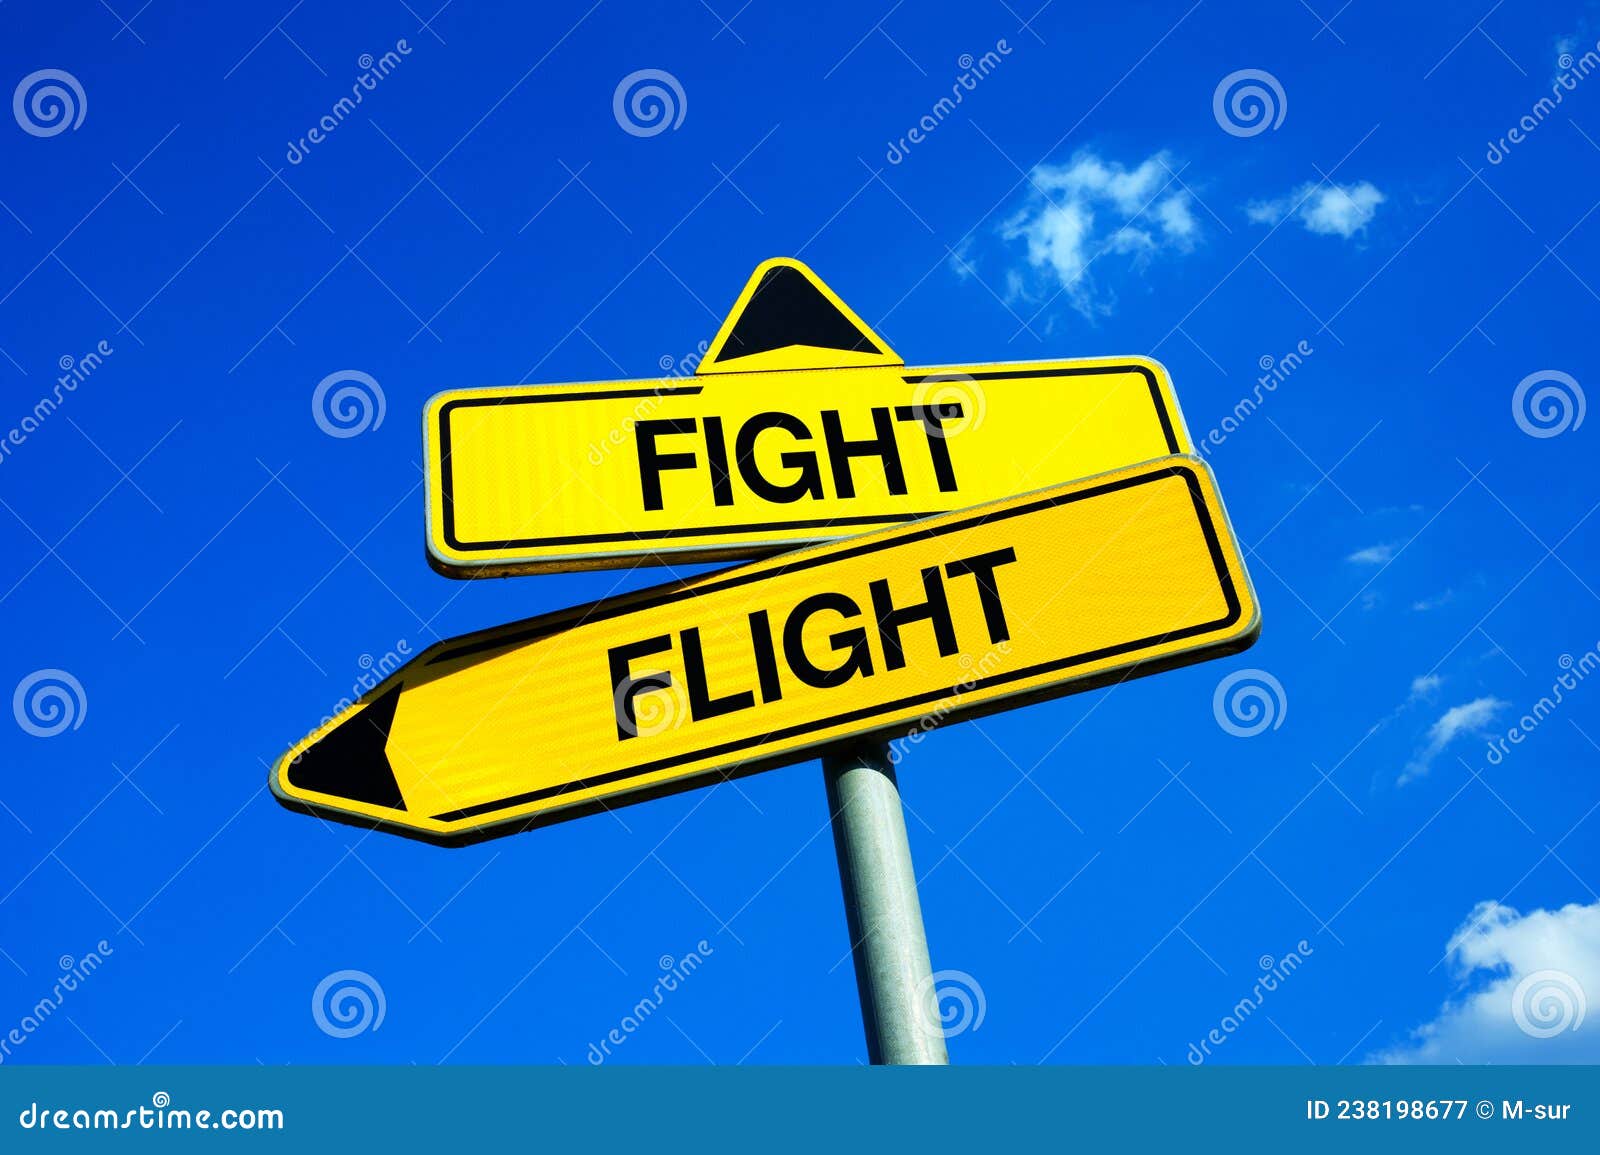 flight or fight